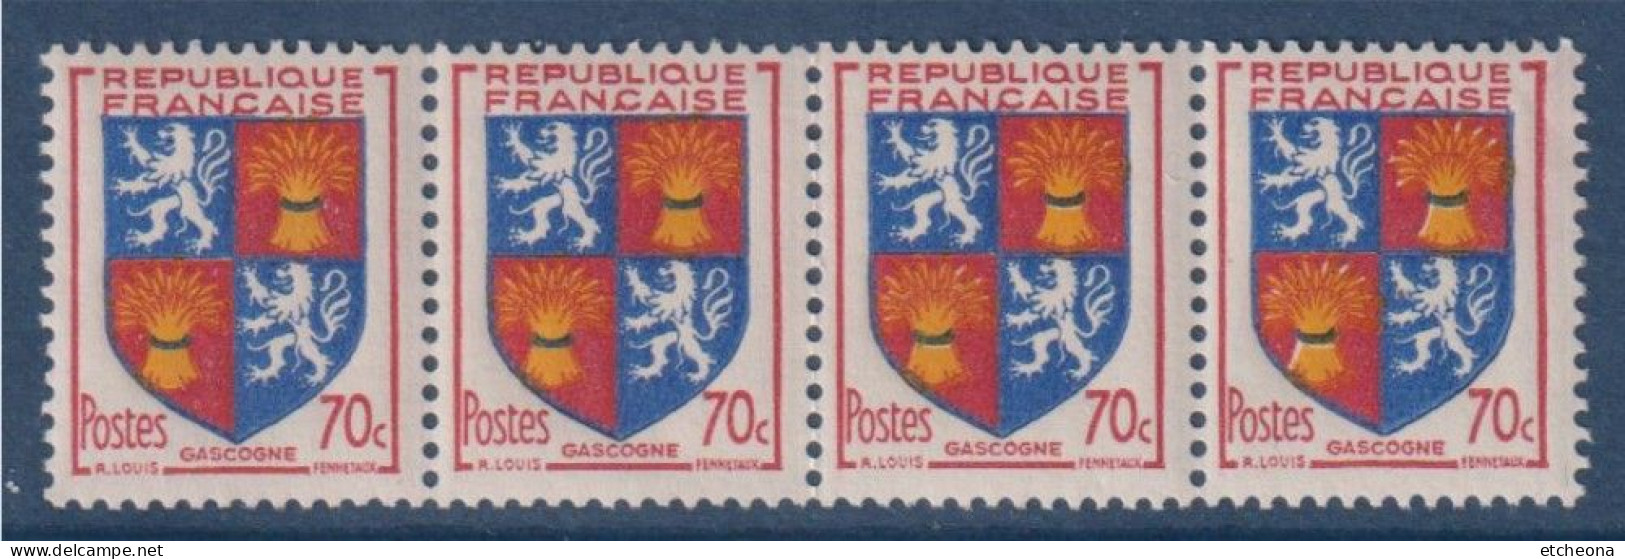 Gascogne Armoiries De Provinces VI N°958 Bande De 4 Timbres Neufs - 1941-66 Wappen